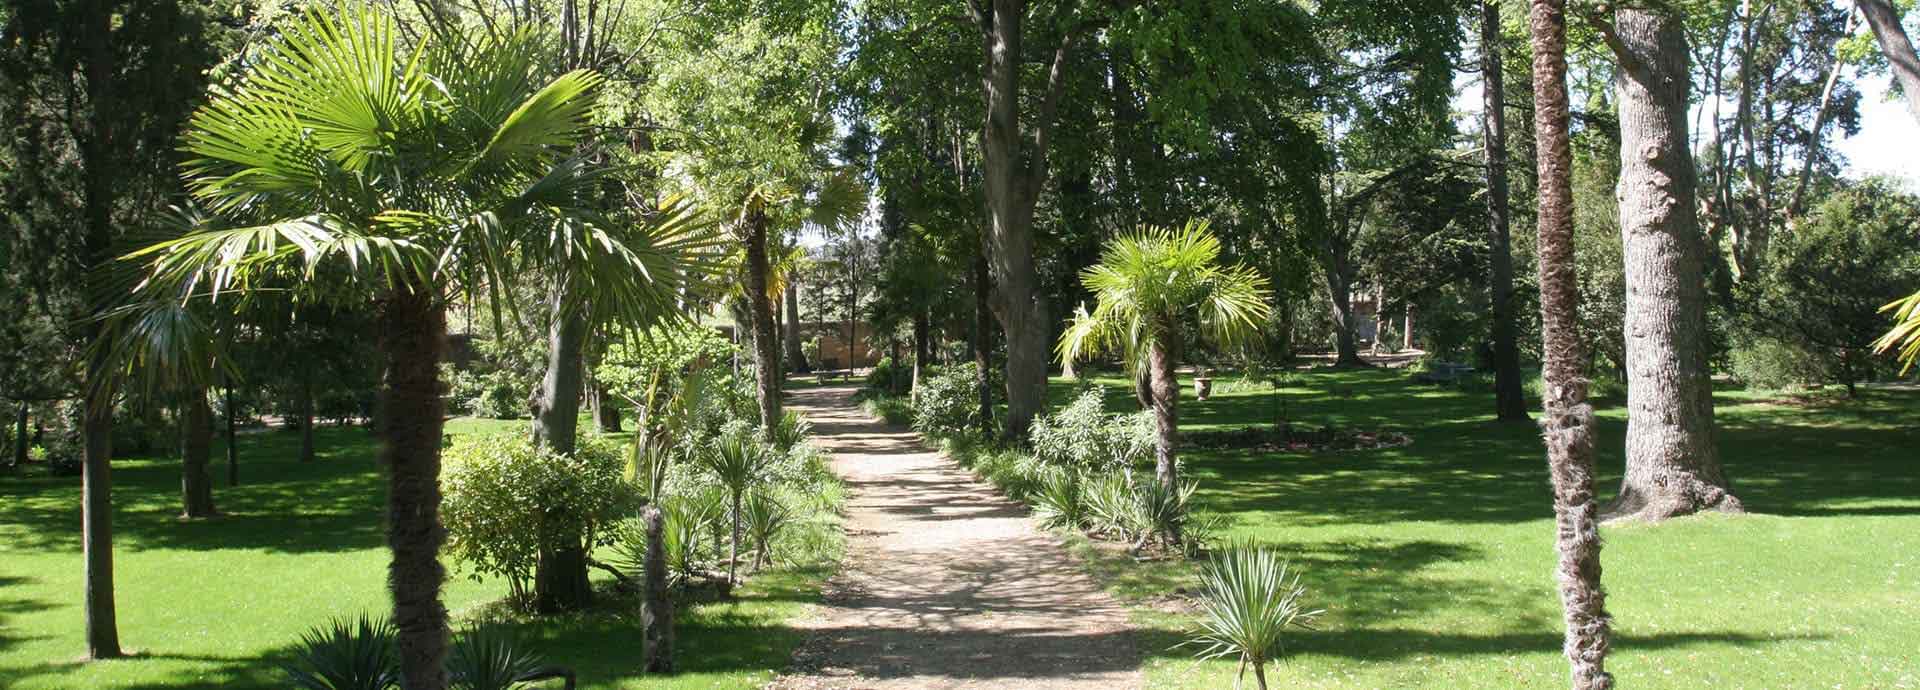 Der Garten des Domaine la Vernède, Ferienhäuser zur Vermietung zwischen Béziers und Narbonne